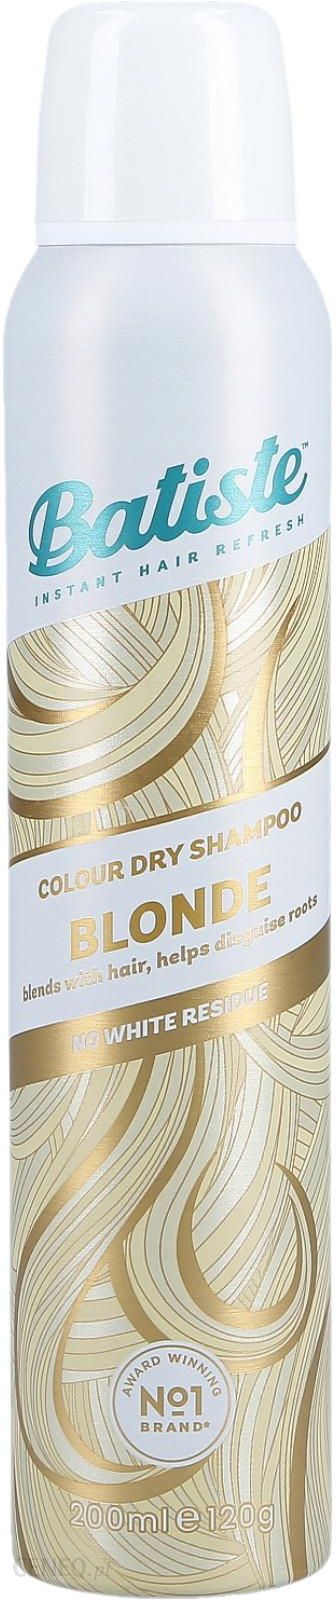 ciemny blond suchy szampon